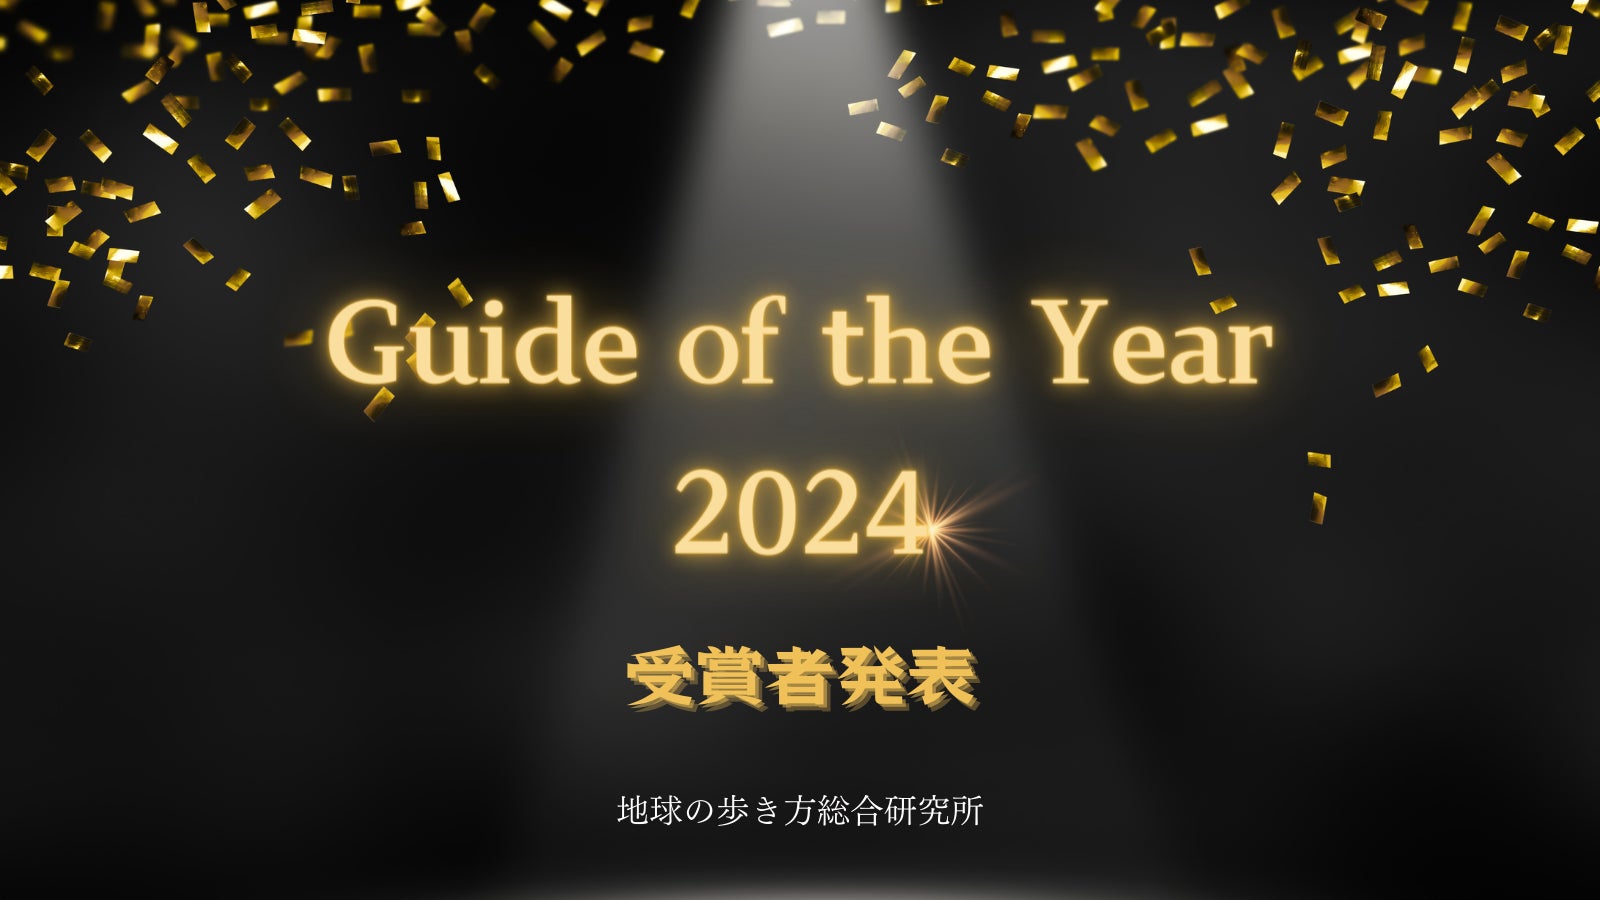 地球の歩き方総合研究所が、旅の価値を上げる通訳ガイドの授賞式を初開催！ 「Guide of the Year 2024」受賞者を発表